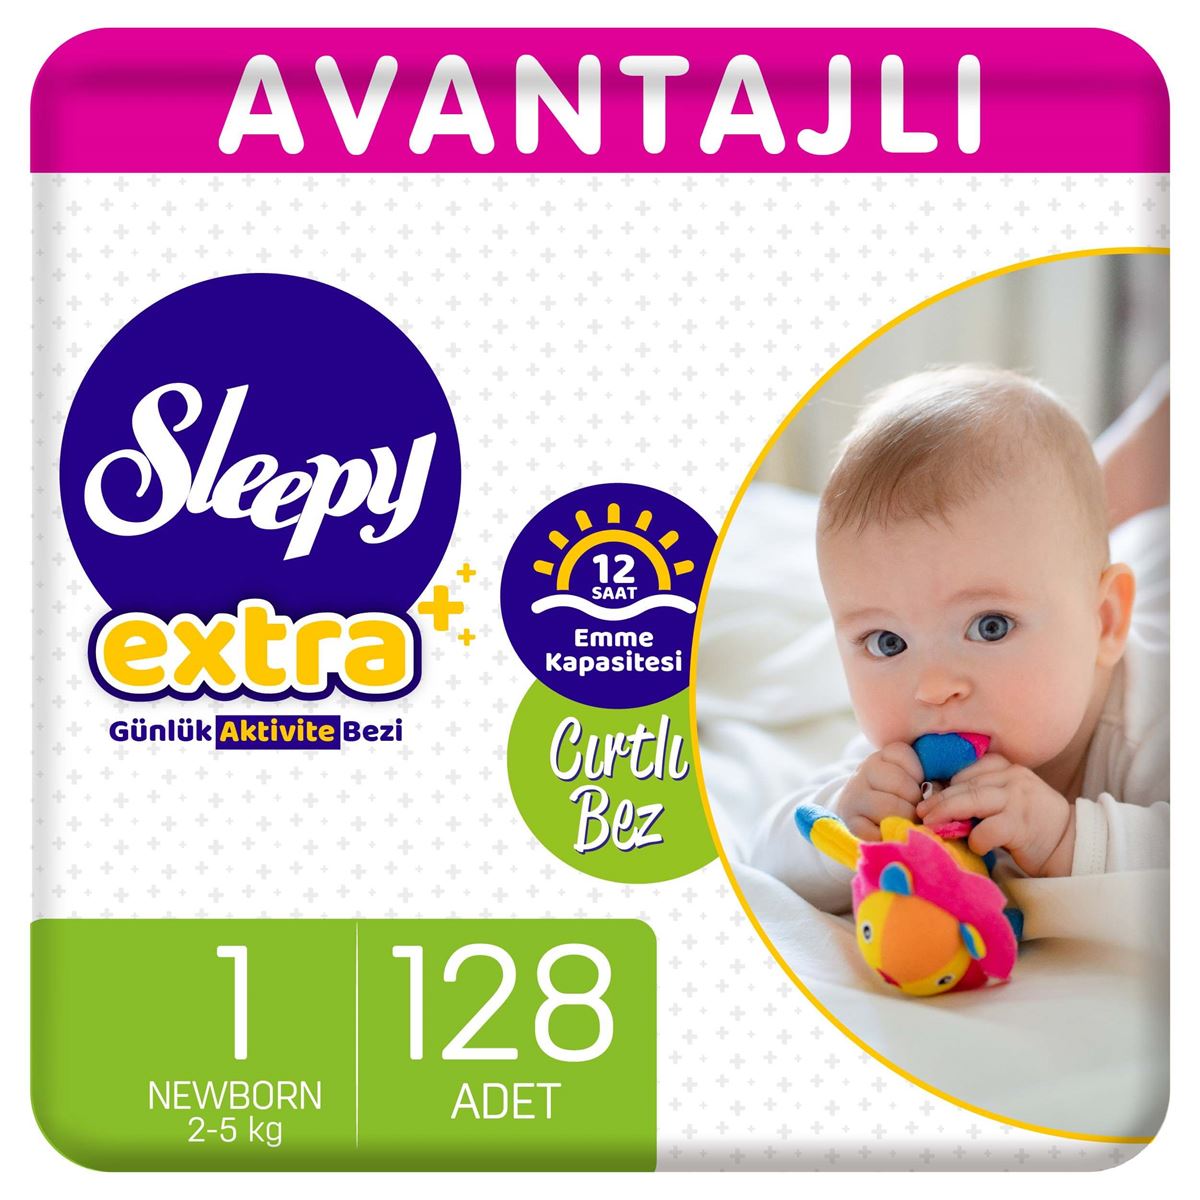 Sleepy Extra Avantajlı Bebek Bezi 1 Numara Yenidoğan 128 Adet